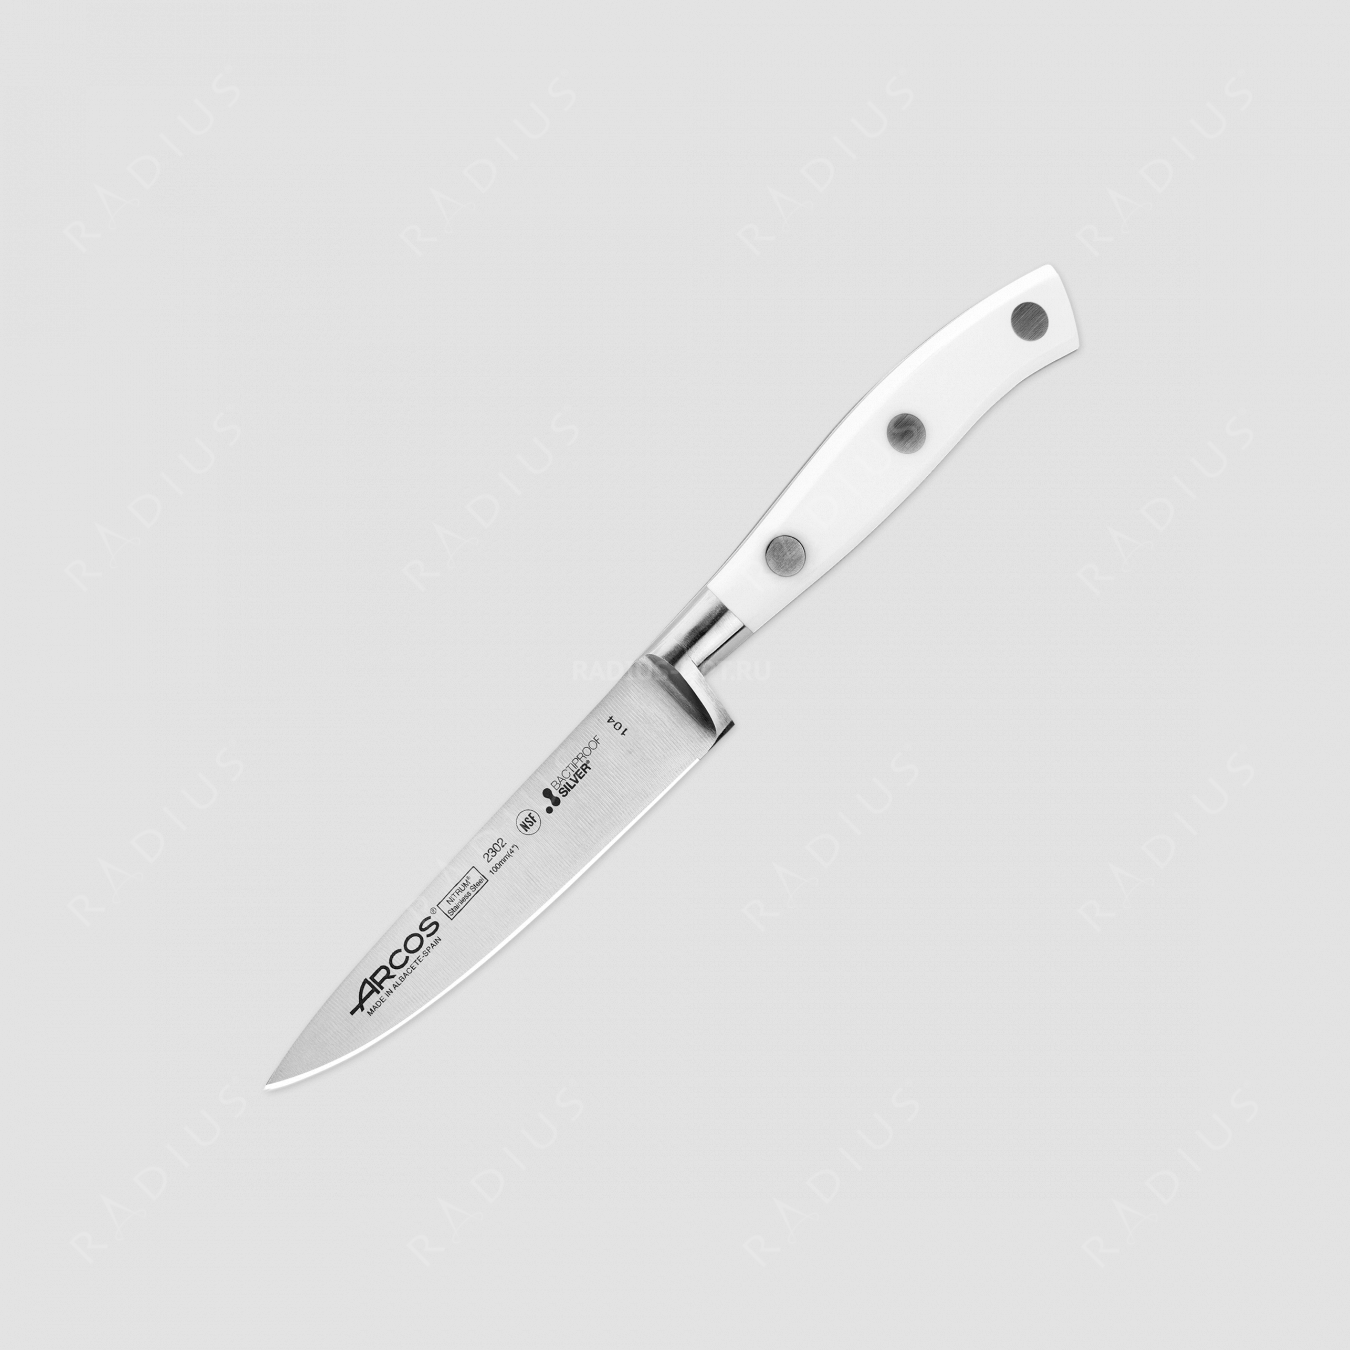 Нож кухонный для чистки 10 см, серия Riviera Blanca, ARCOS, Испания